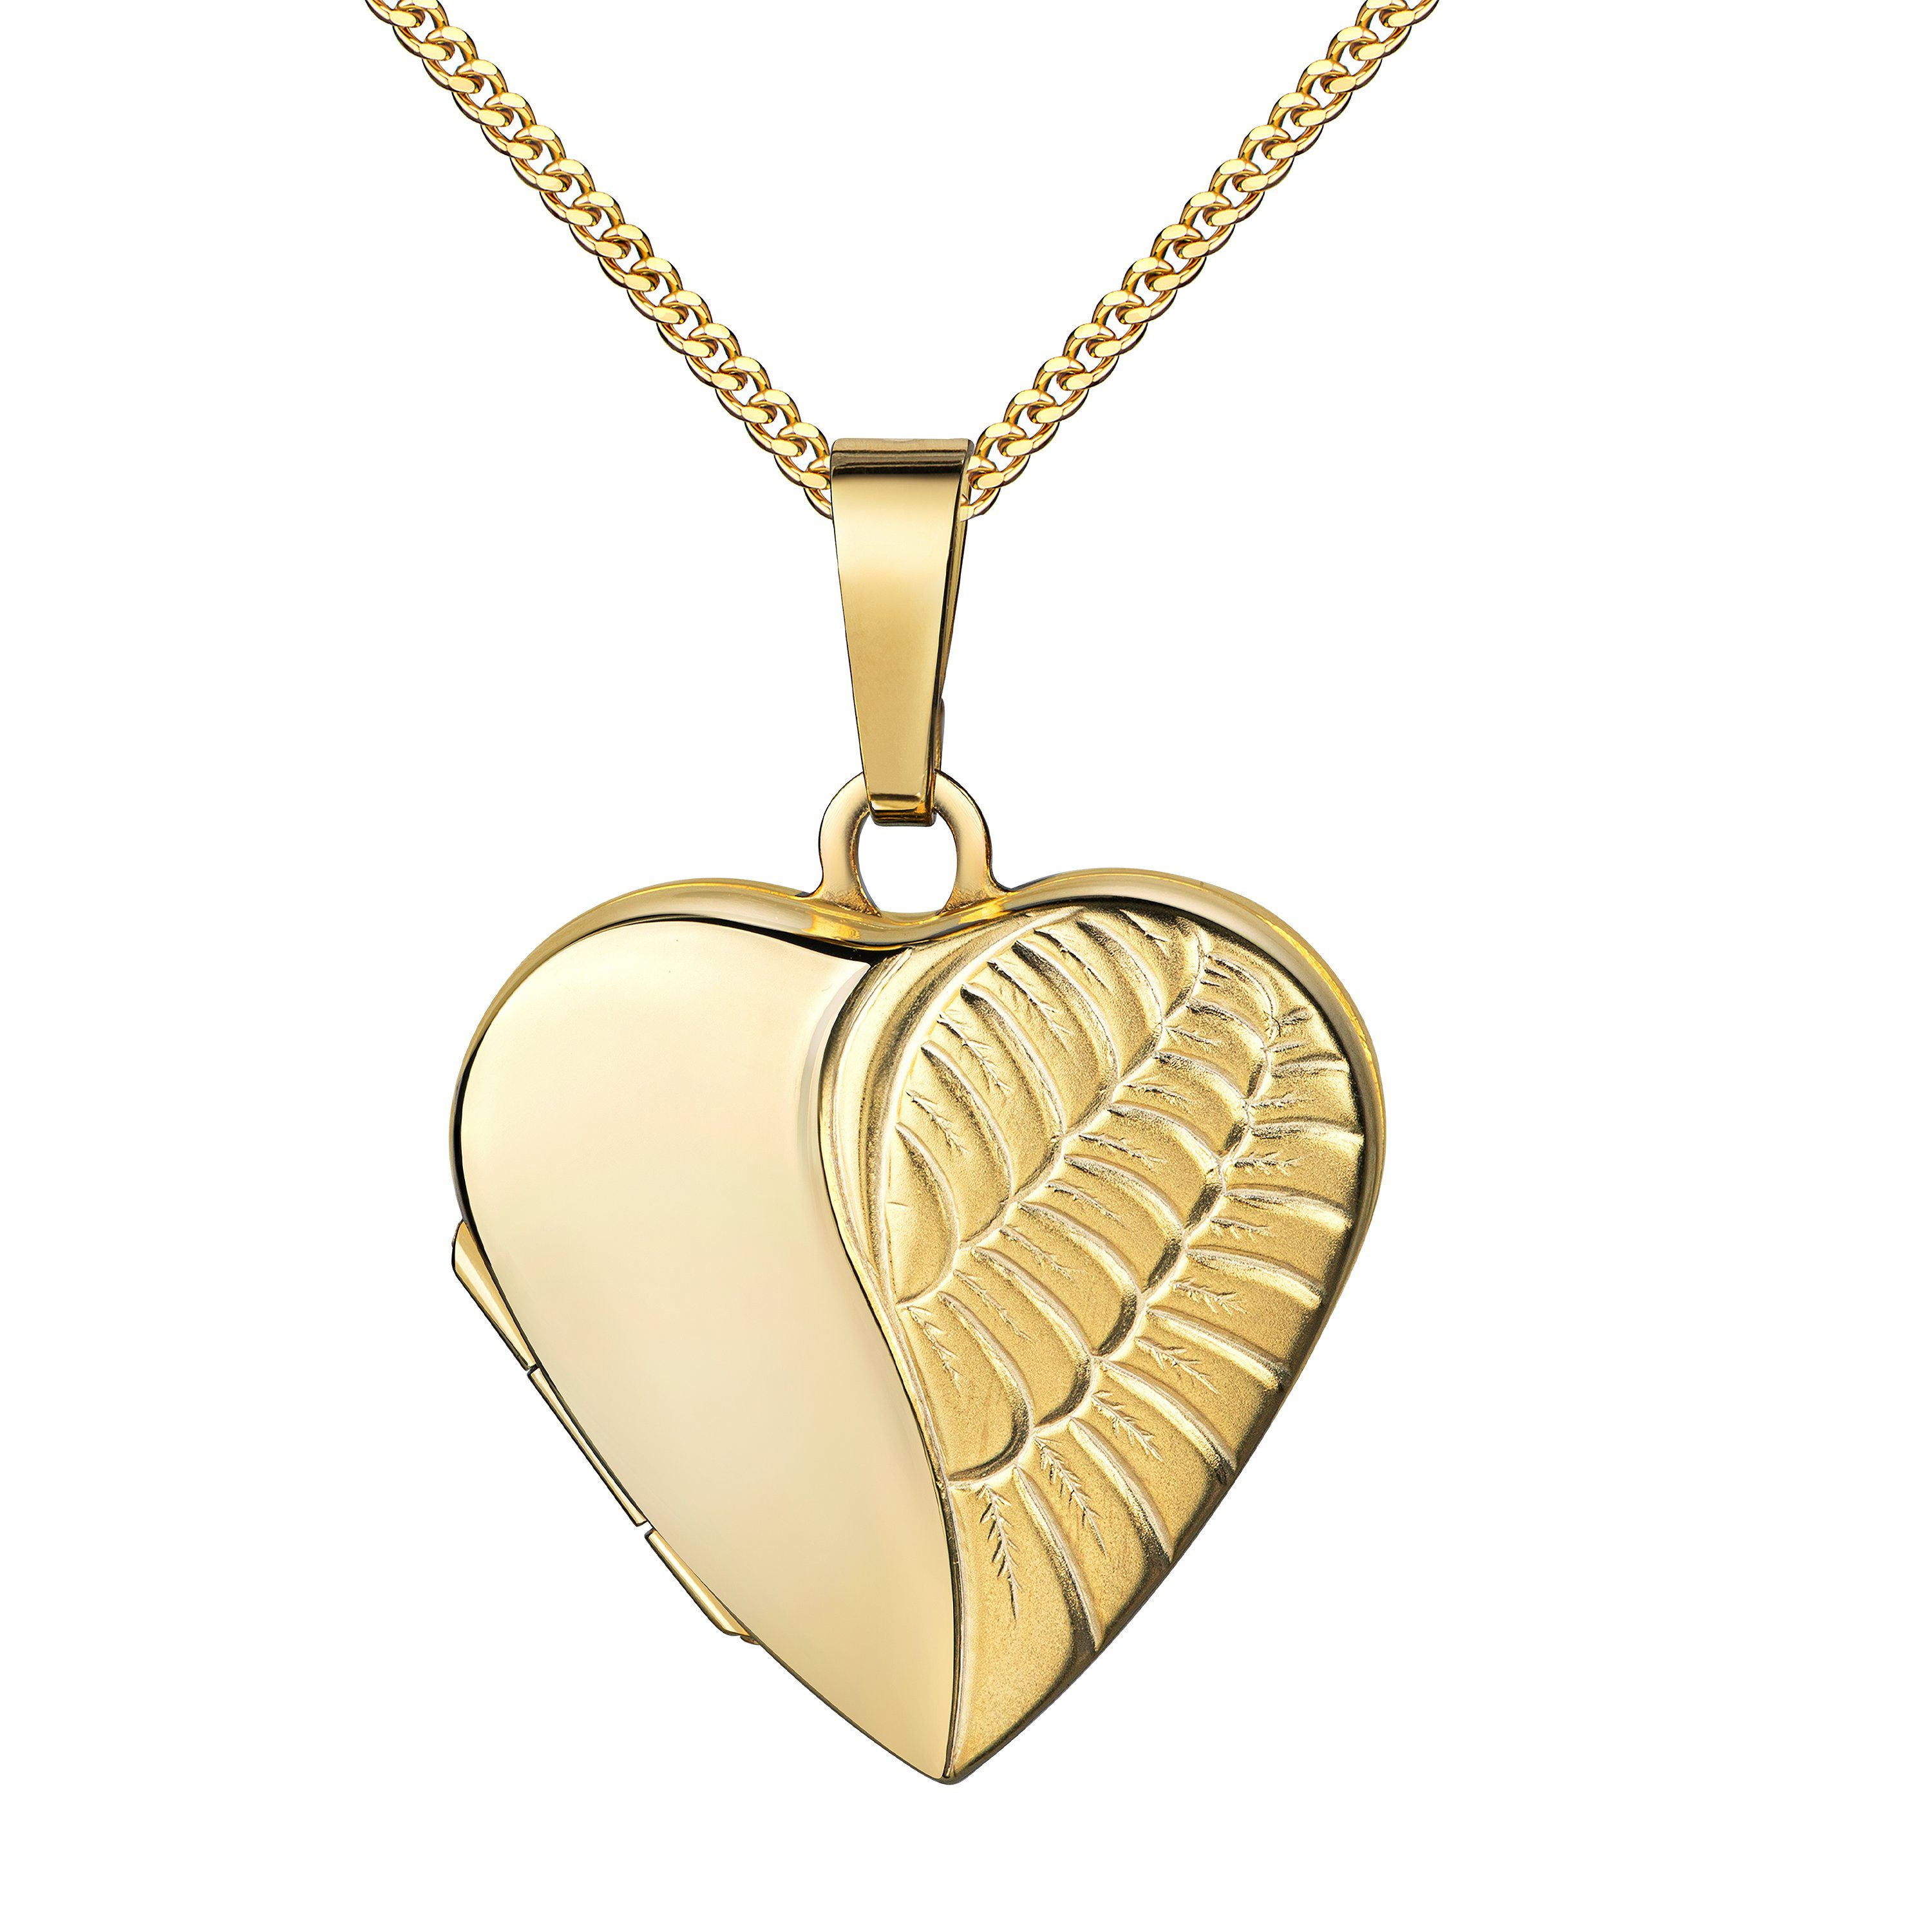 JEVELION Amulett Medaillon 585 Gold-Amulett Herz Flügel zum Öffnen 2 Bilder Herzkette (Foto Medaillon aus Gold, für Damen und Mädchen), Mit Kette vergoldet - Länge wählbar 36 - 70 cm oder ohne Kette.